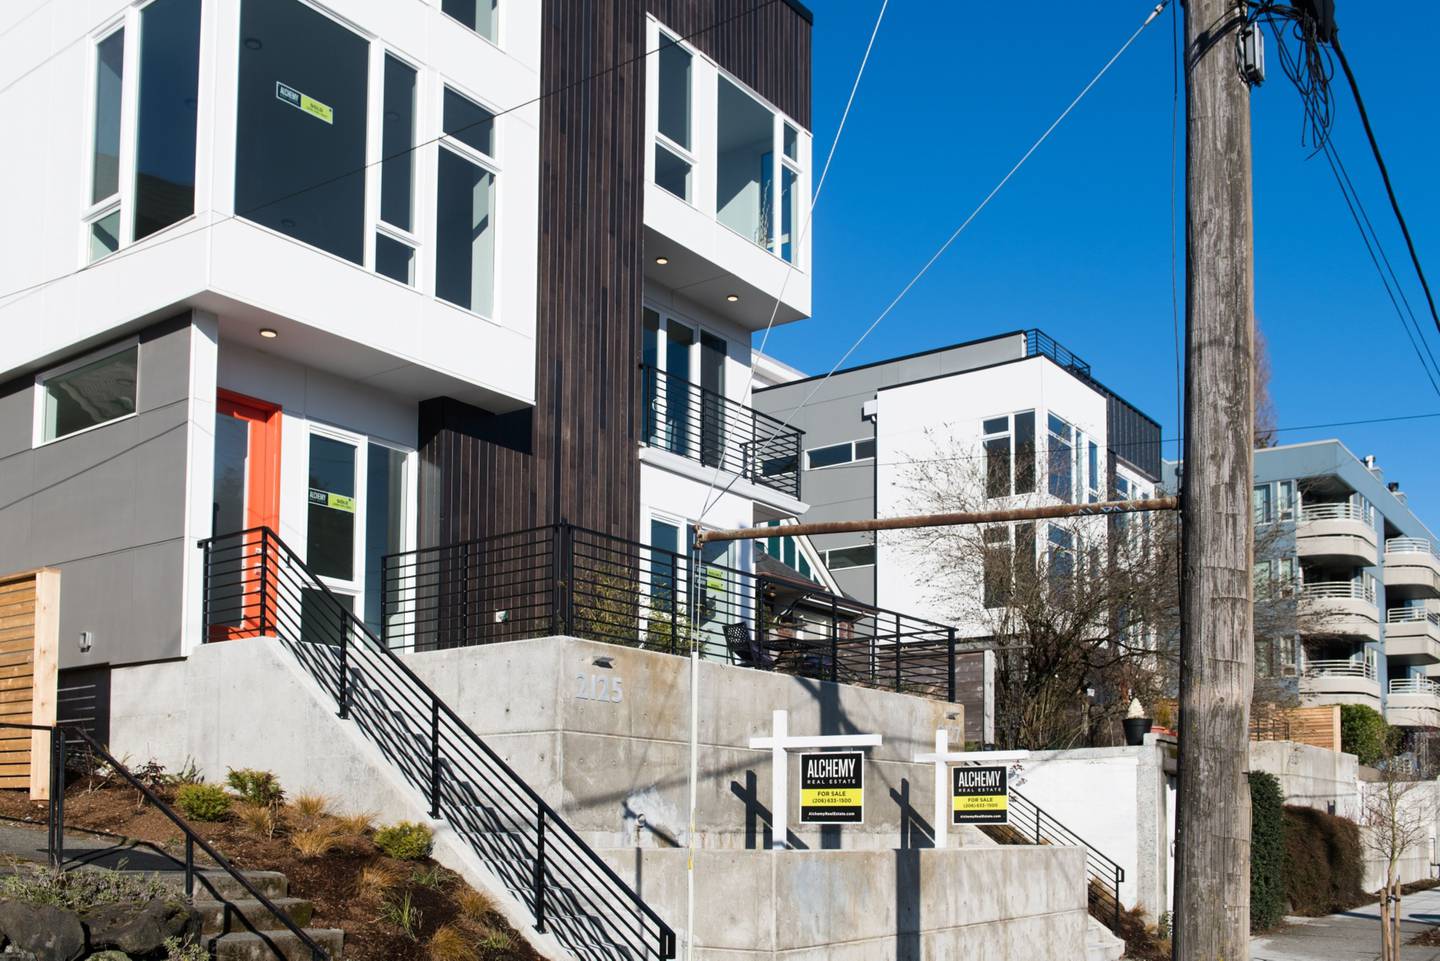 Casas adosadas en venta en el barrio Queen Anne de Seattle, Washington, Estados Unidos, el domingo 10 de marzo de 2019.